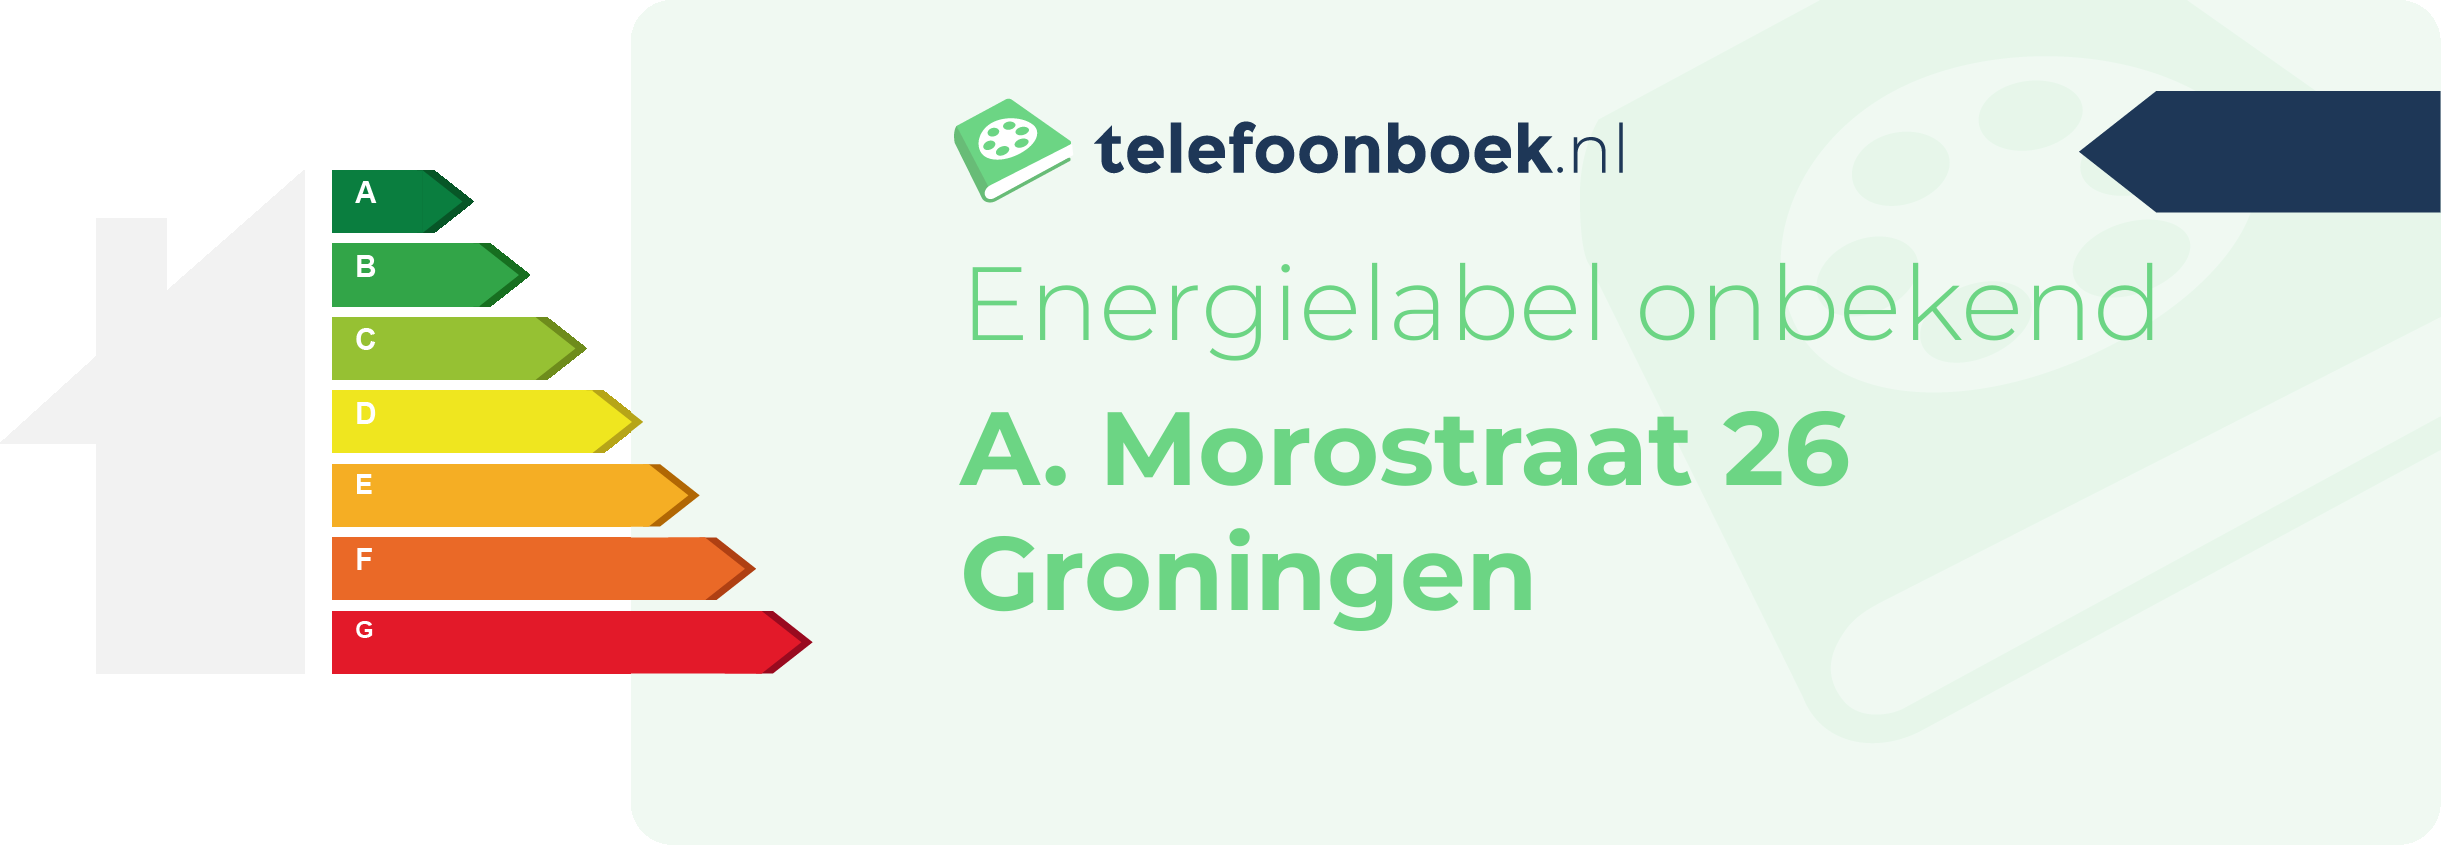 Energielabel A. Morostraat 26 Groningen